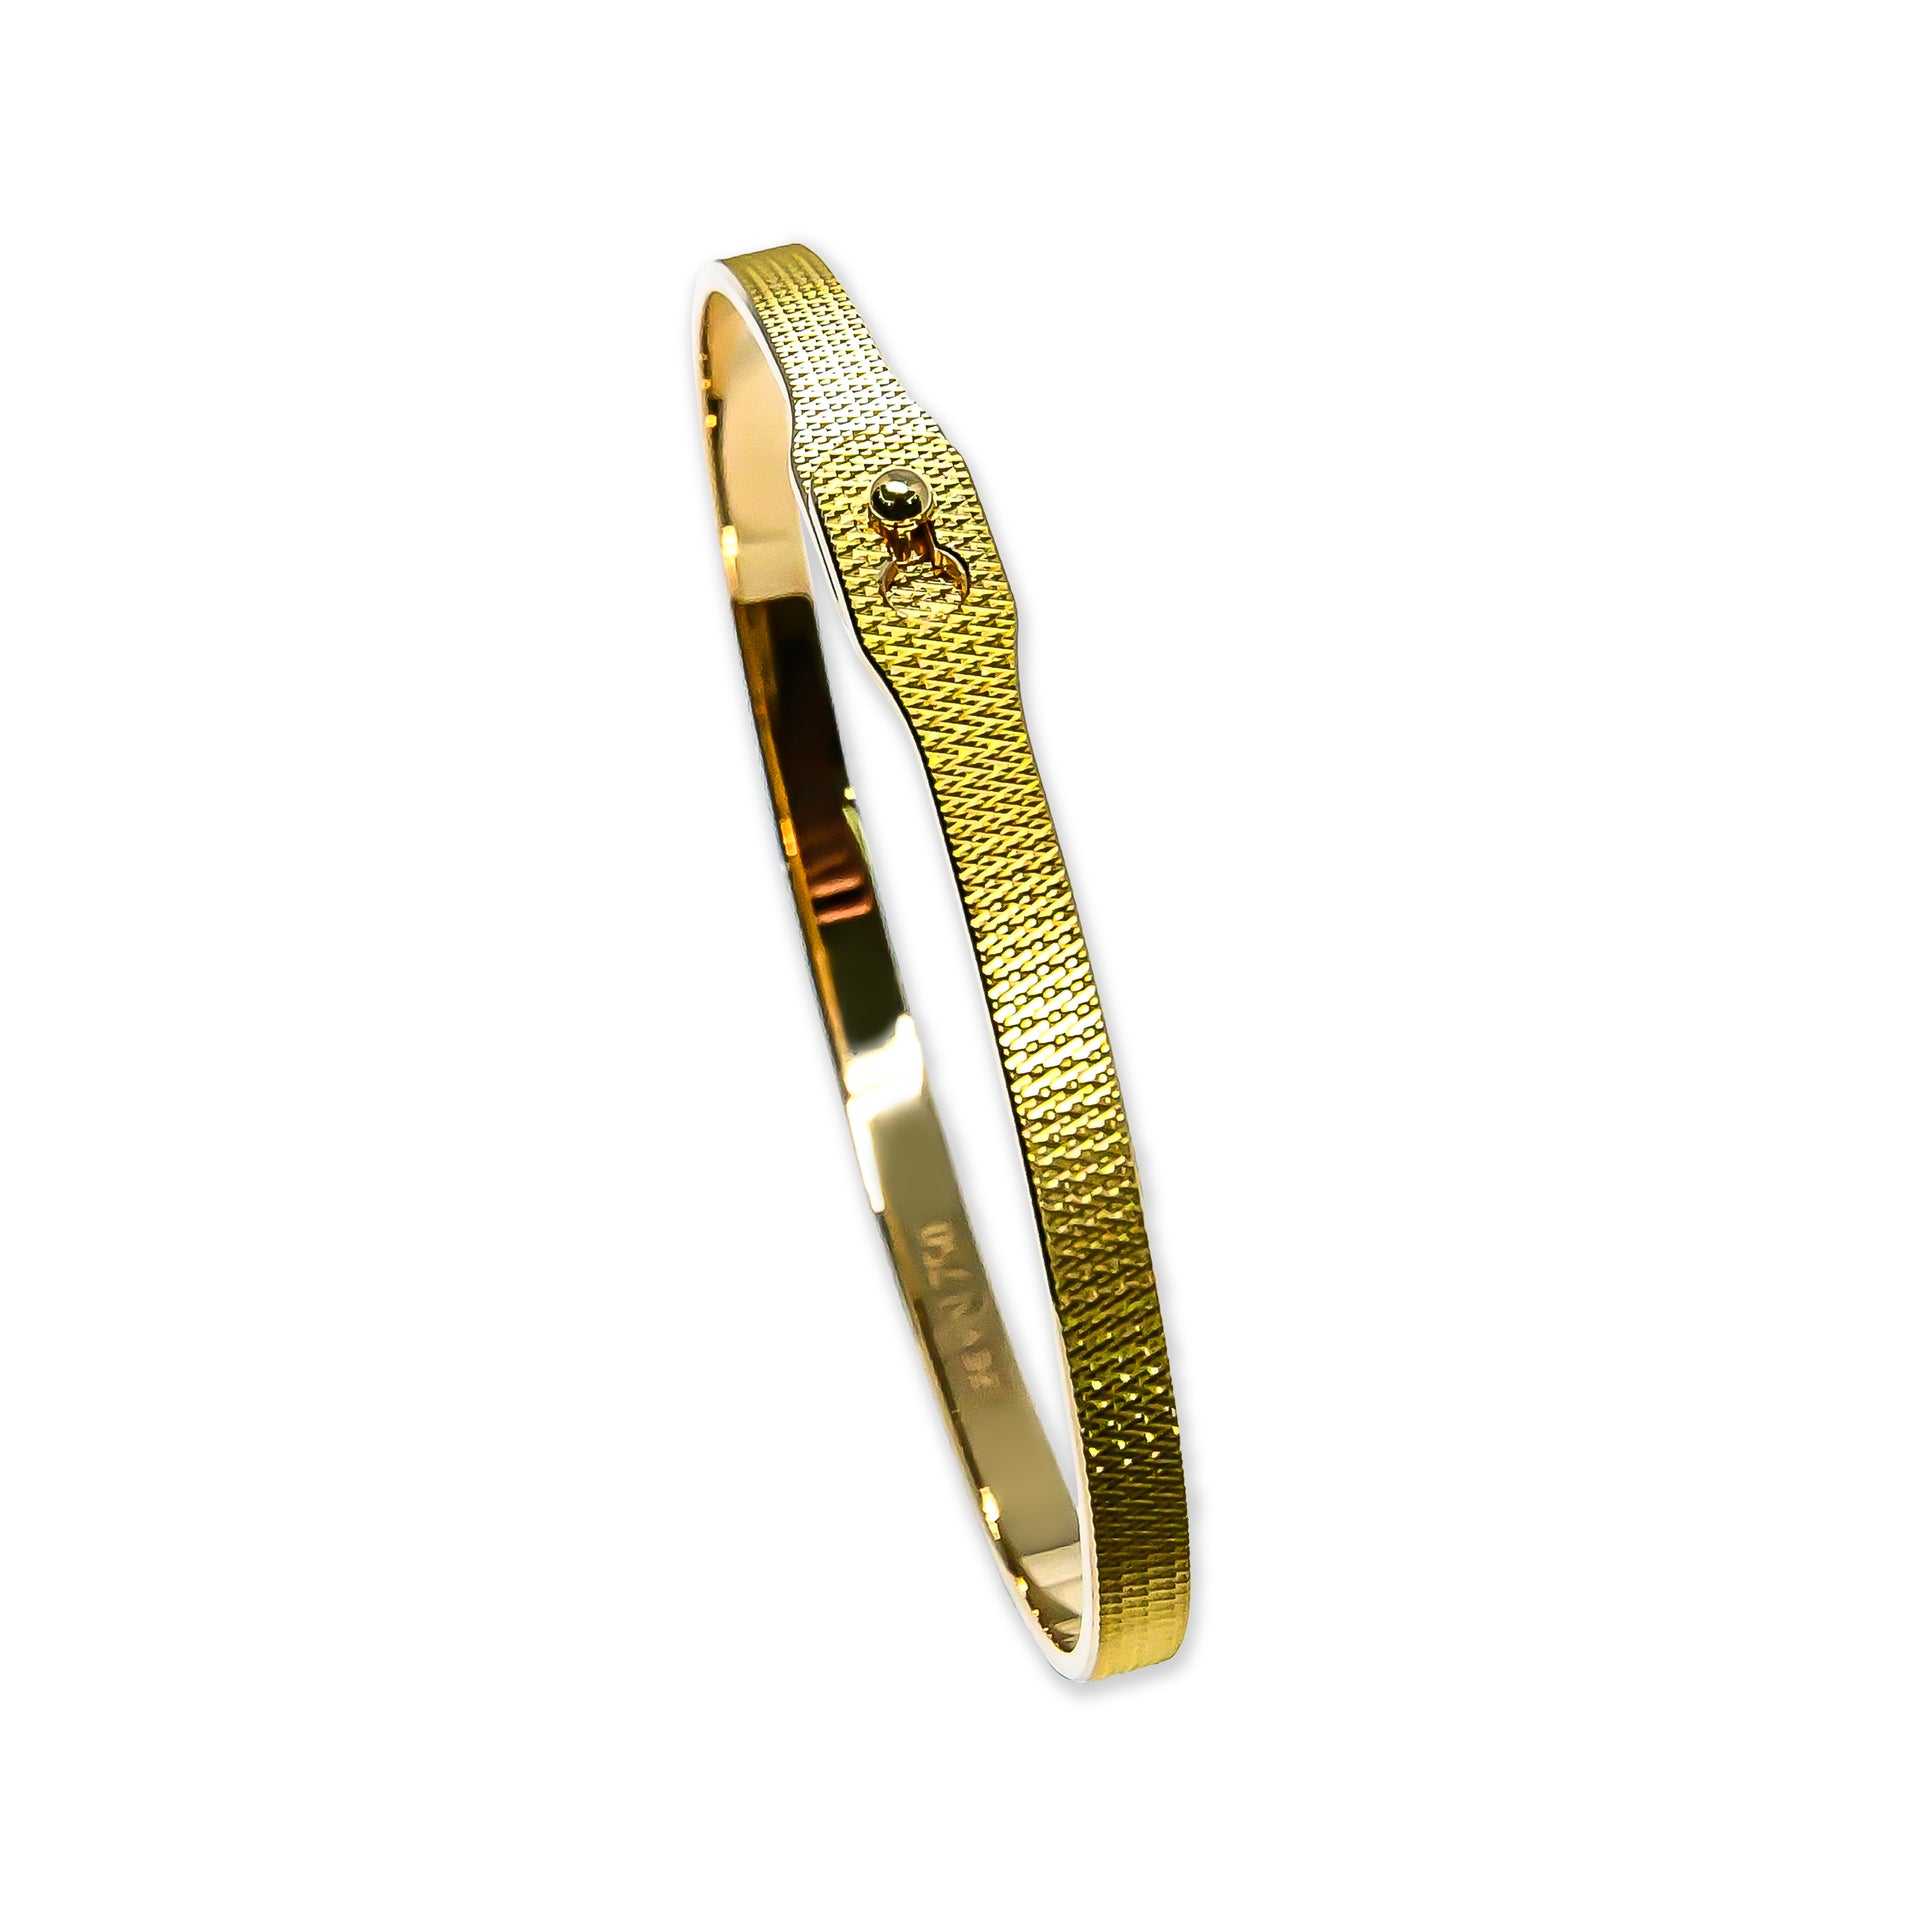 Bracelet WIRED 4mm flexible avec fermoir épingle or jaune 18k 750